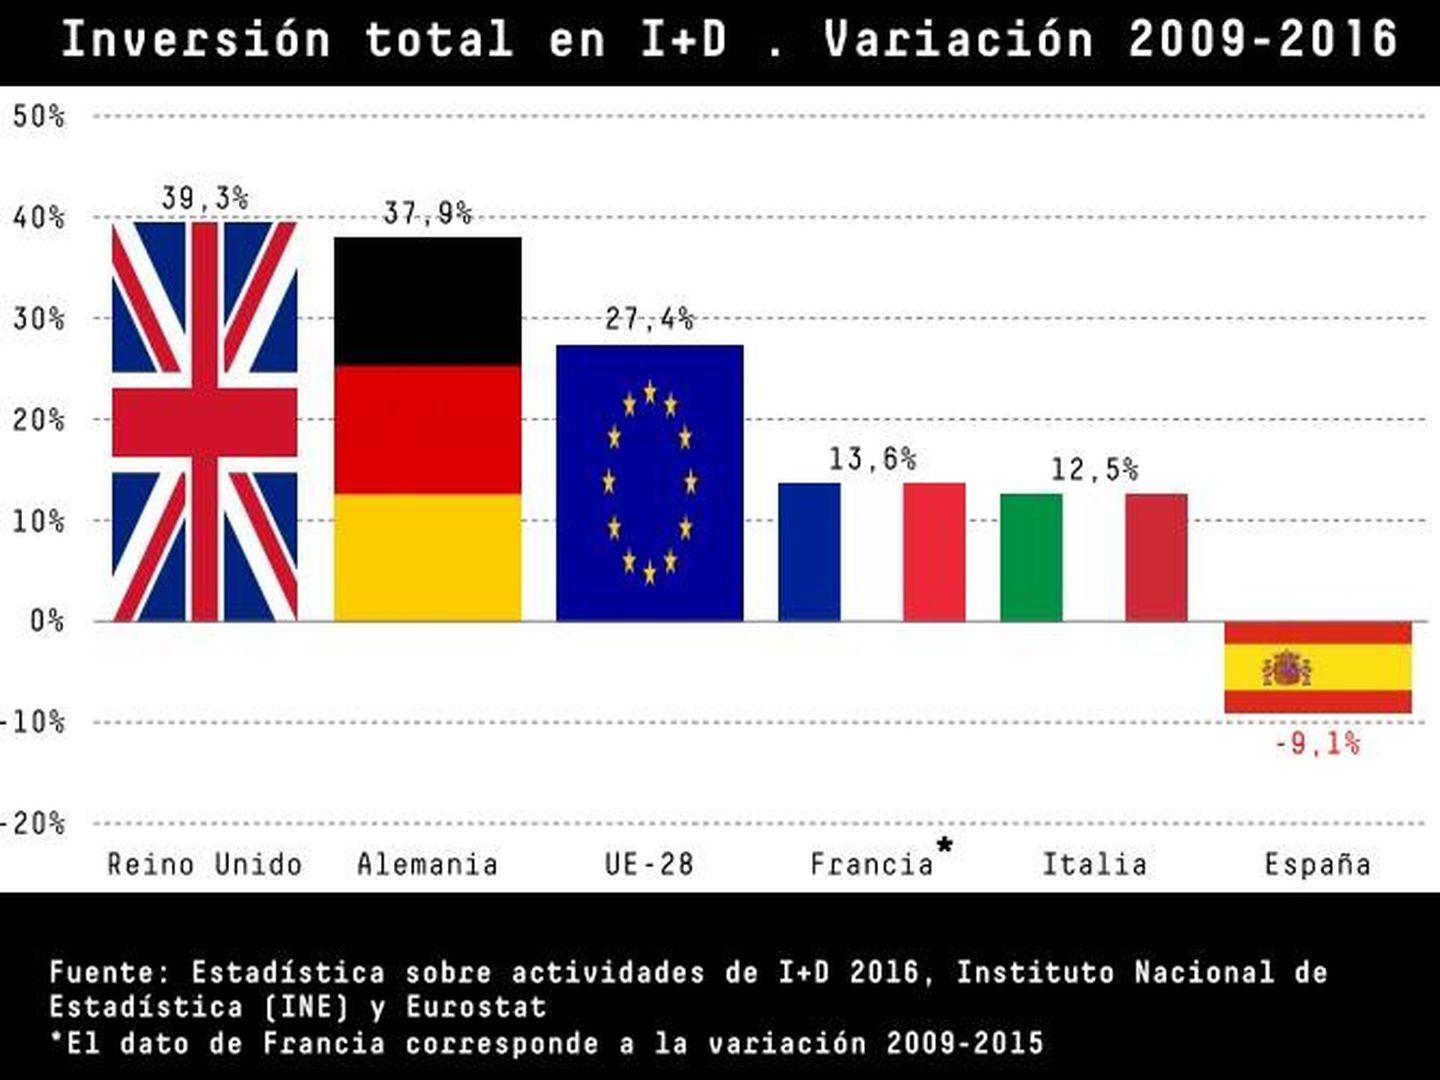 En España no nos hemos recuperado los niveles de inversión en innovación tras la crisis, mientras la media europea sí lo ha hecho. (Fuente: Cotec)